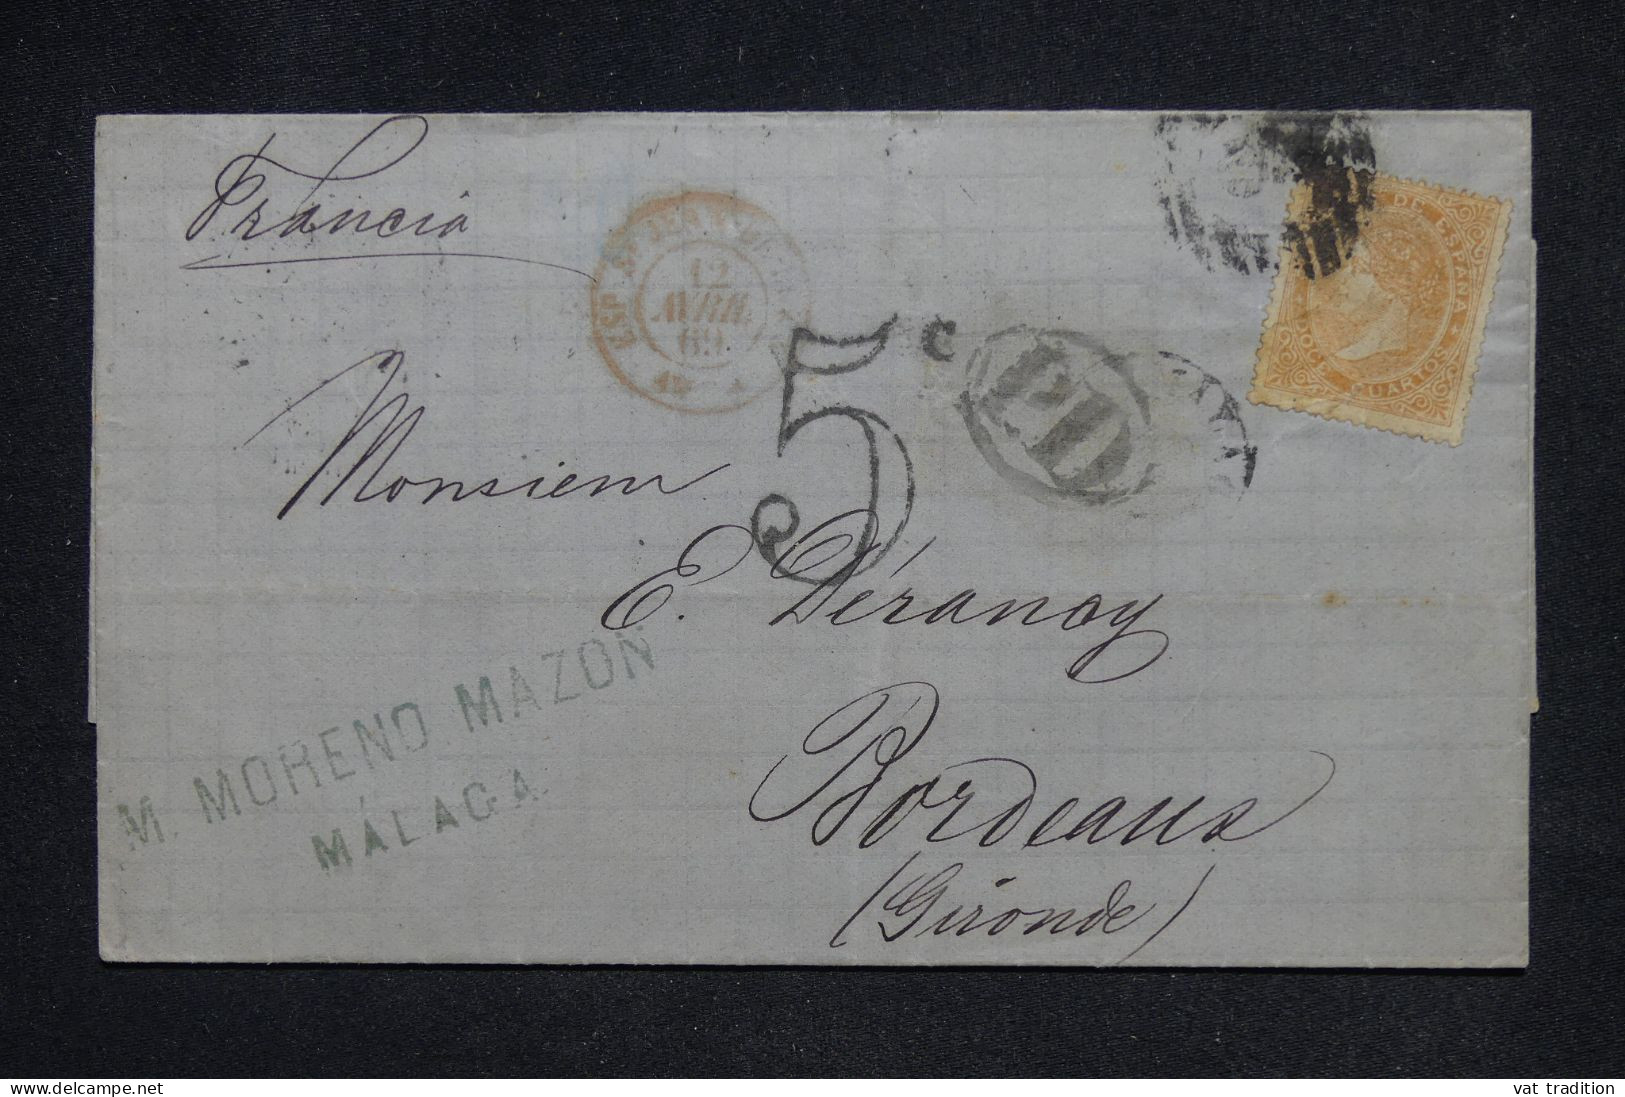 ESPAGNE - Lettre De Malaga Pour Bordeaux En 1869  - L 148506 - Covers & Documents